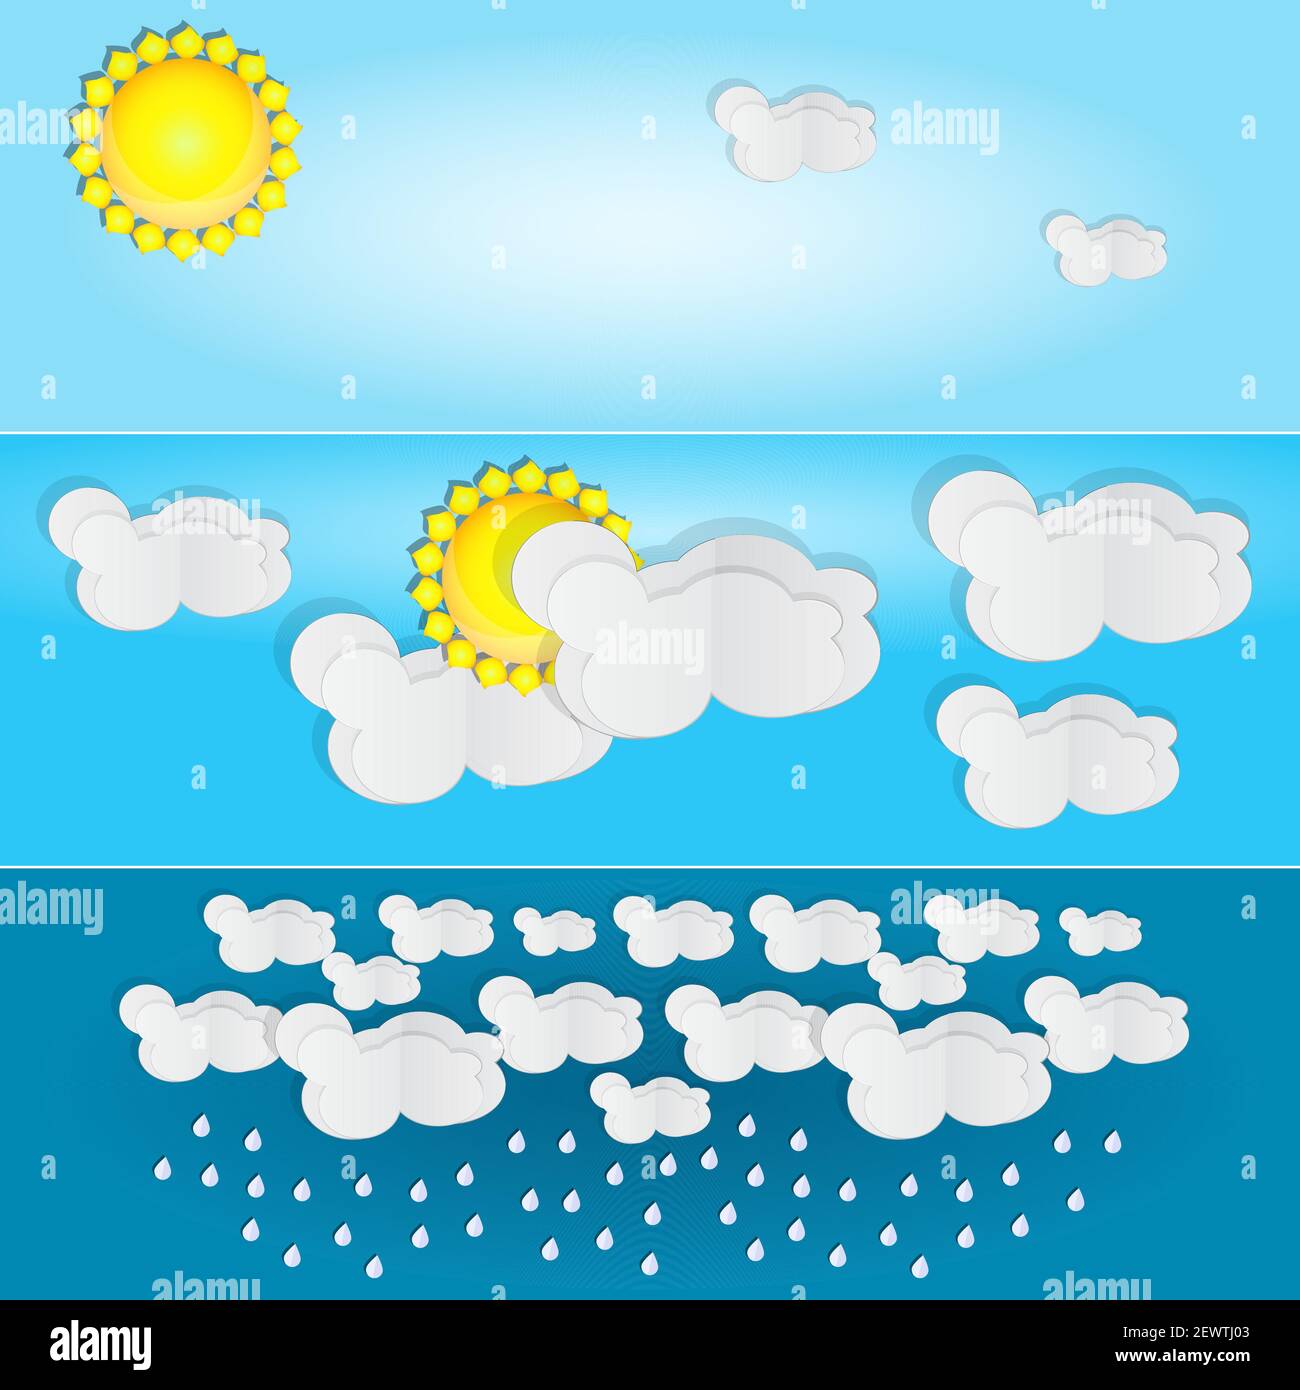 Verschiedene Wettertypen. Tag und Sommer Banner.Horizontale Plakate mit Papier Wolken für Wettervorhersage.Saison Icons.Stock Vektor Illustration Stock Vektor